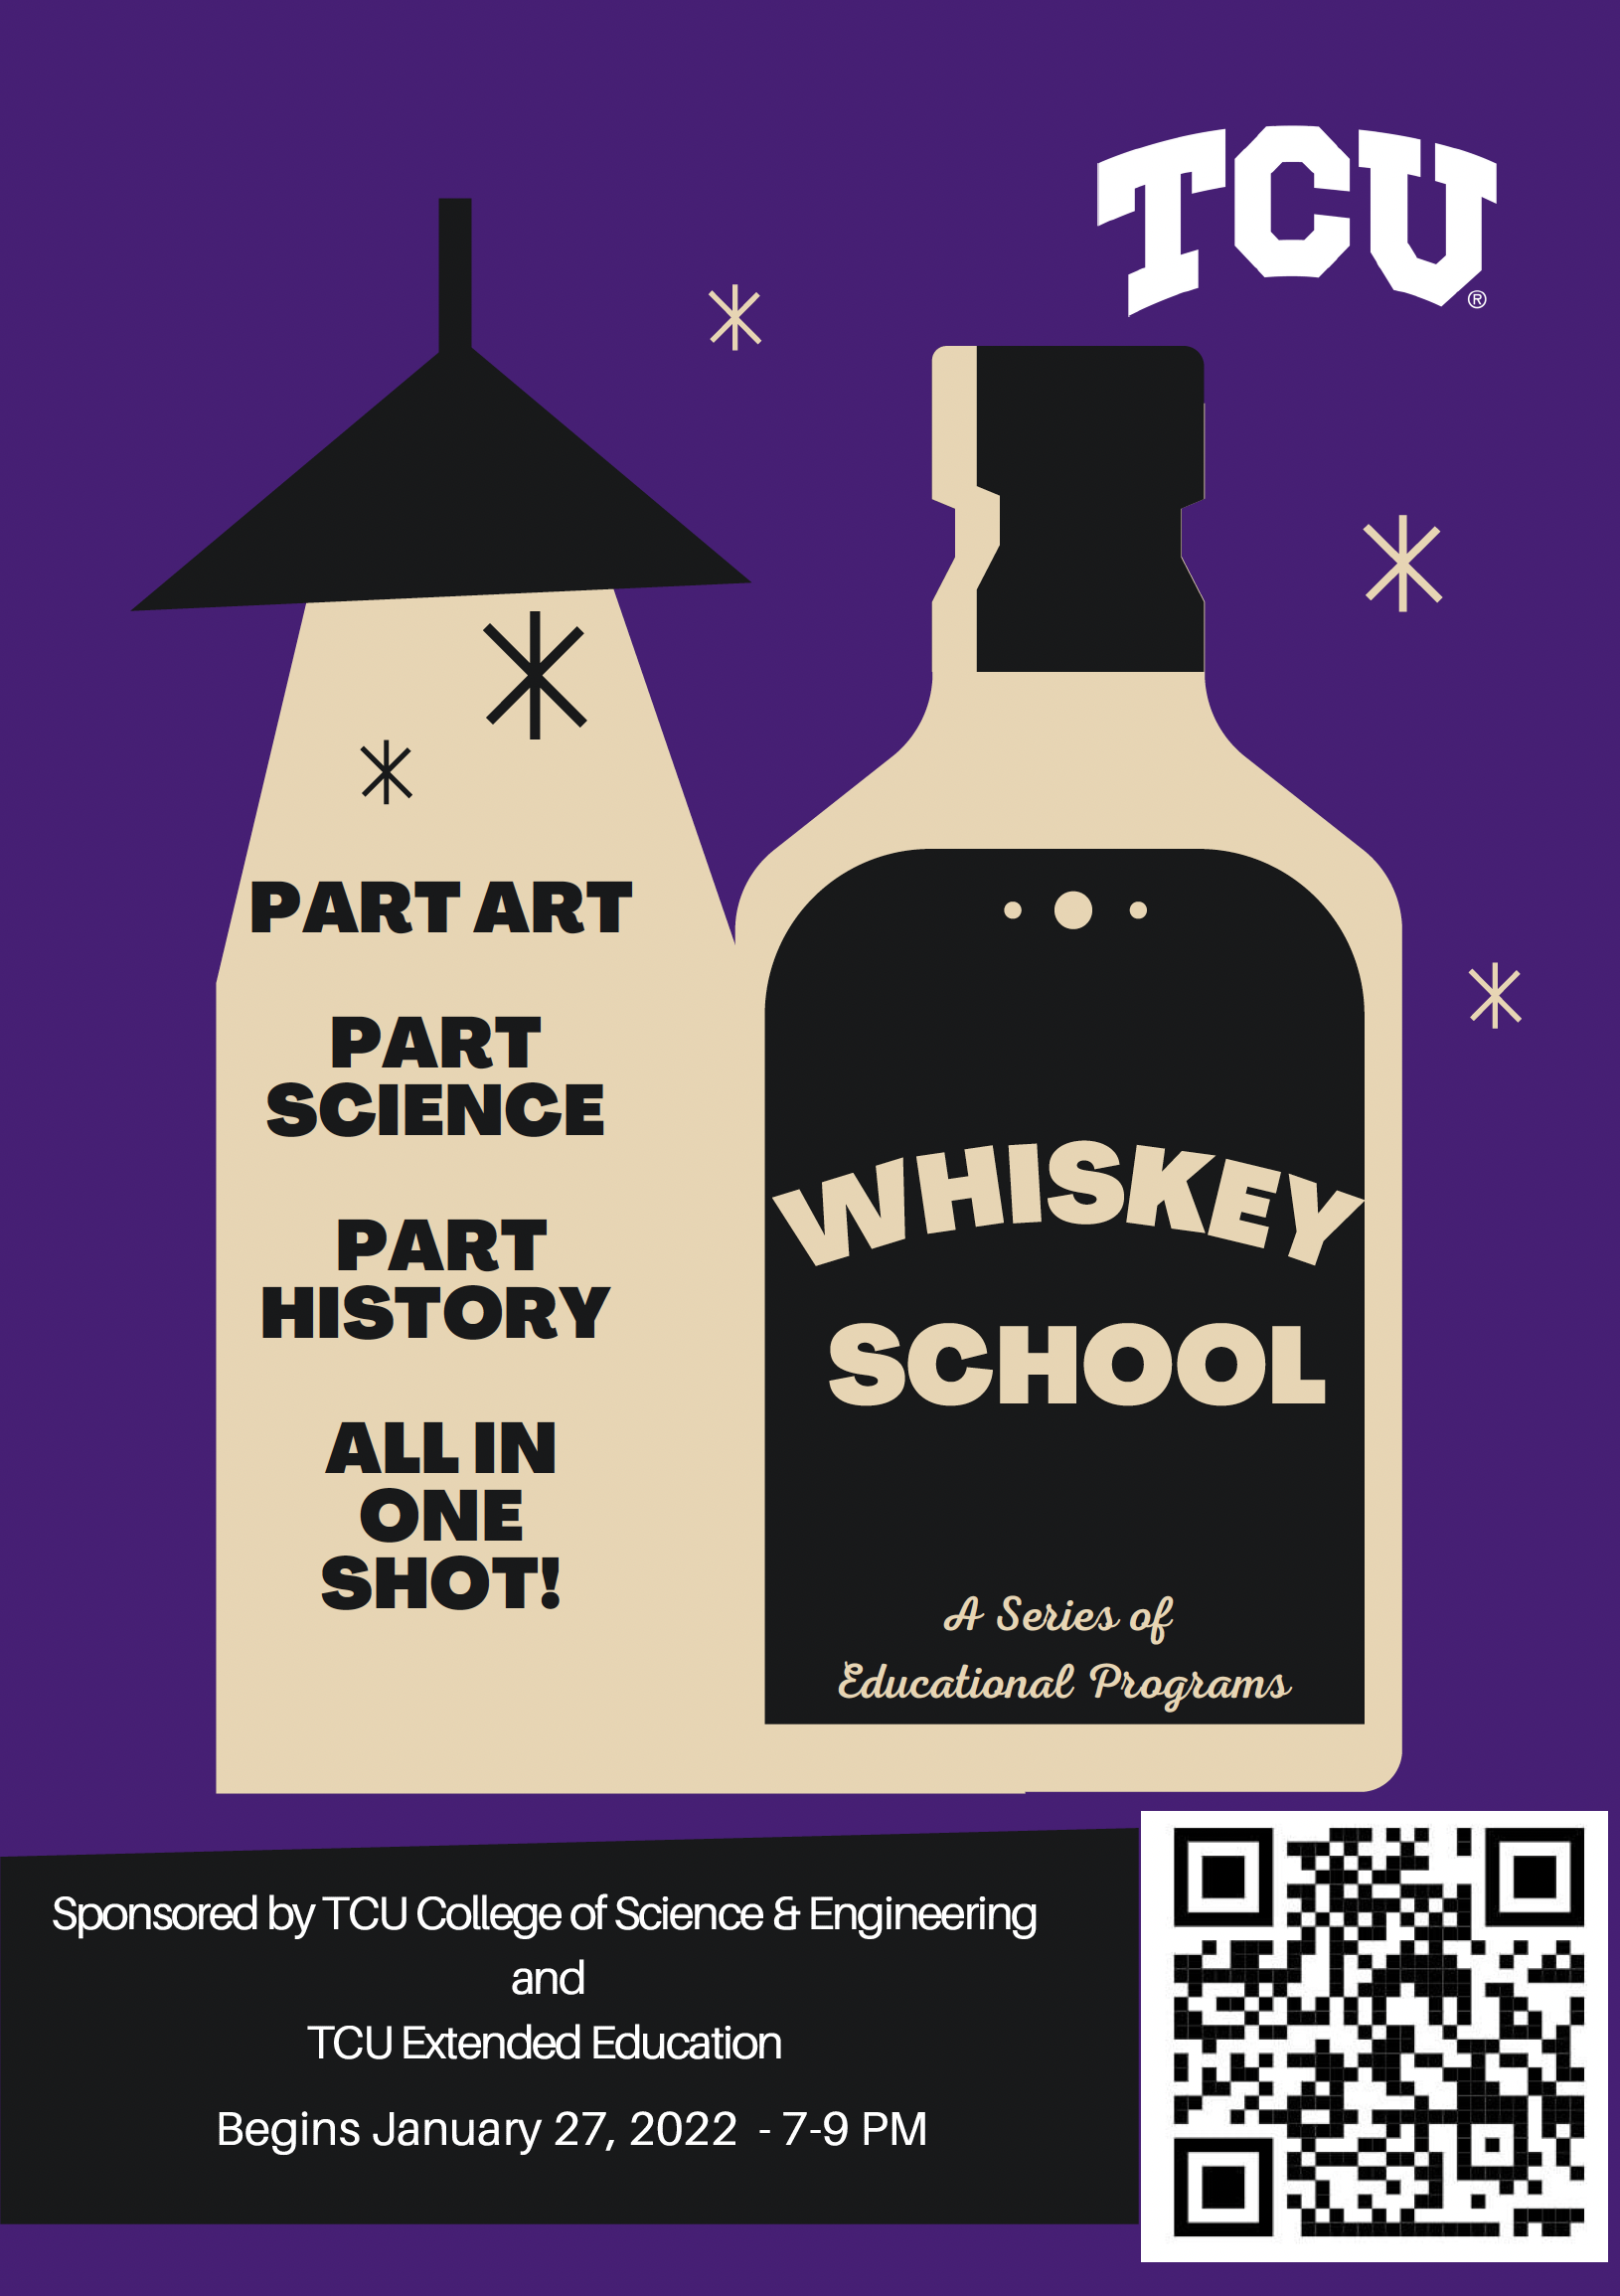 whiskey school